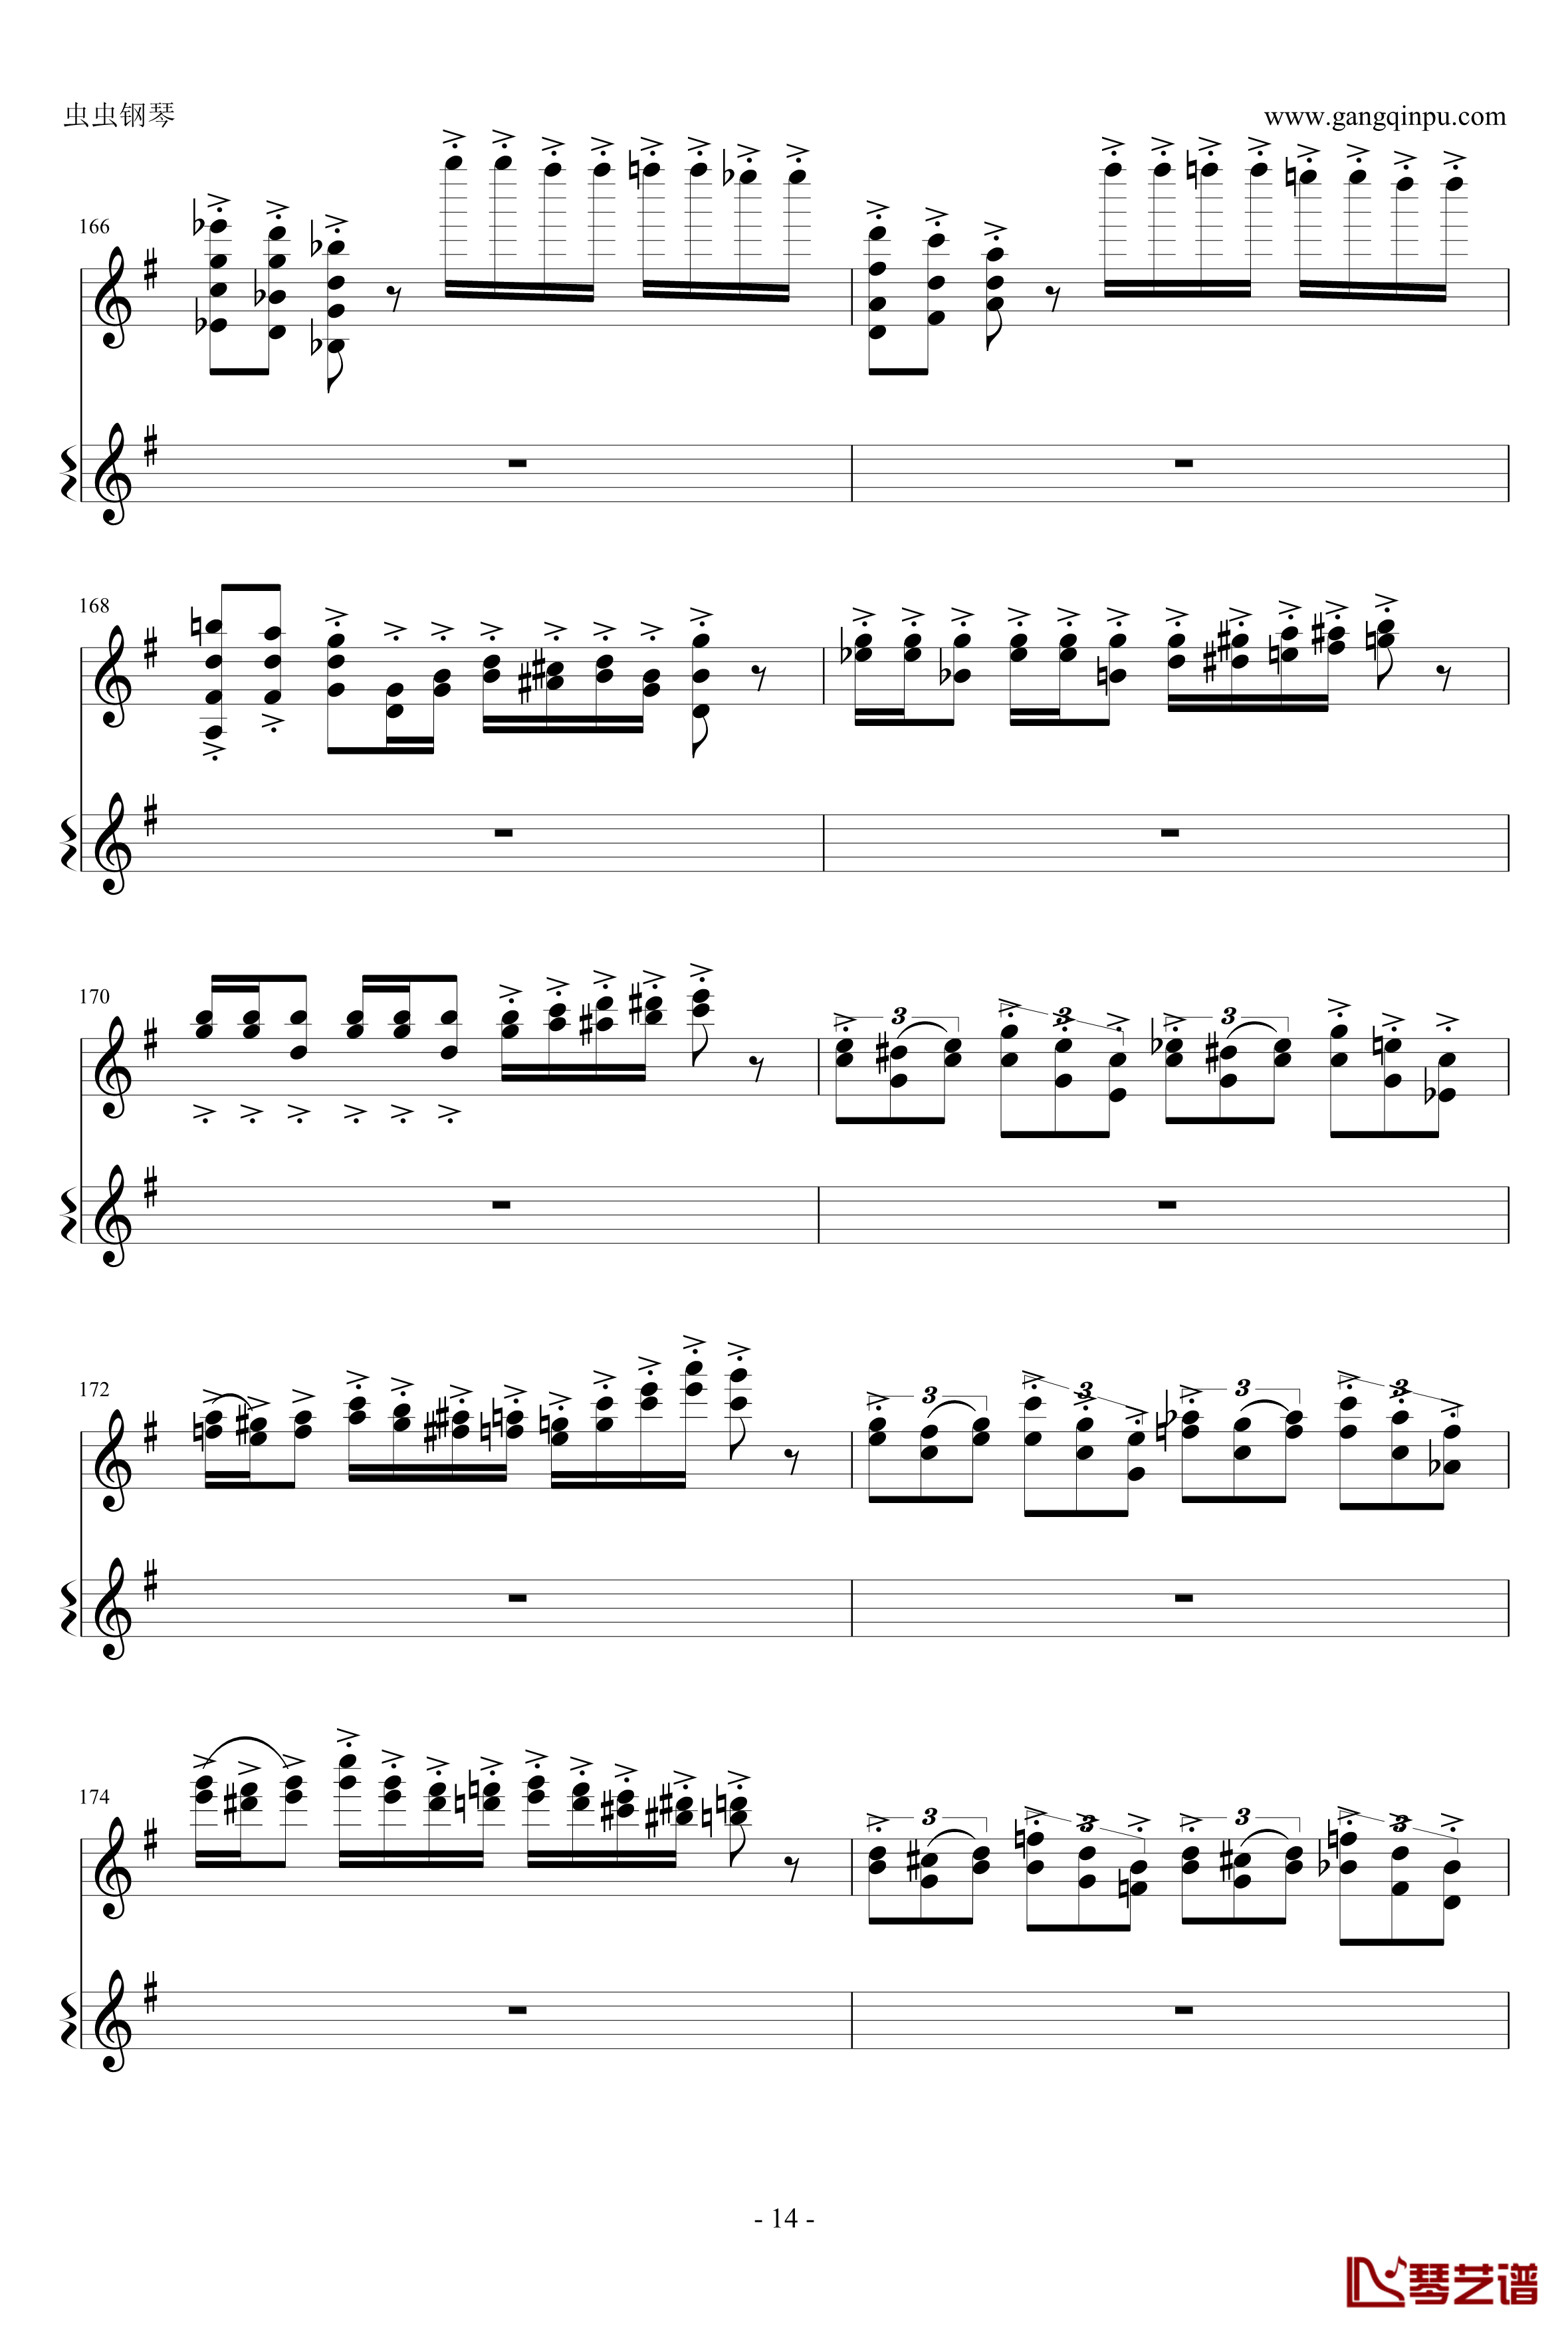 意大利国歌钢琴谱-变奏曲修改版-DXF14